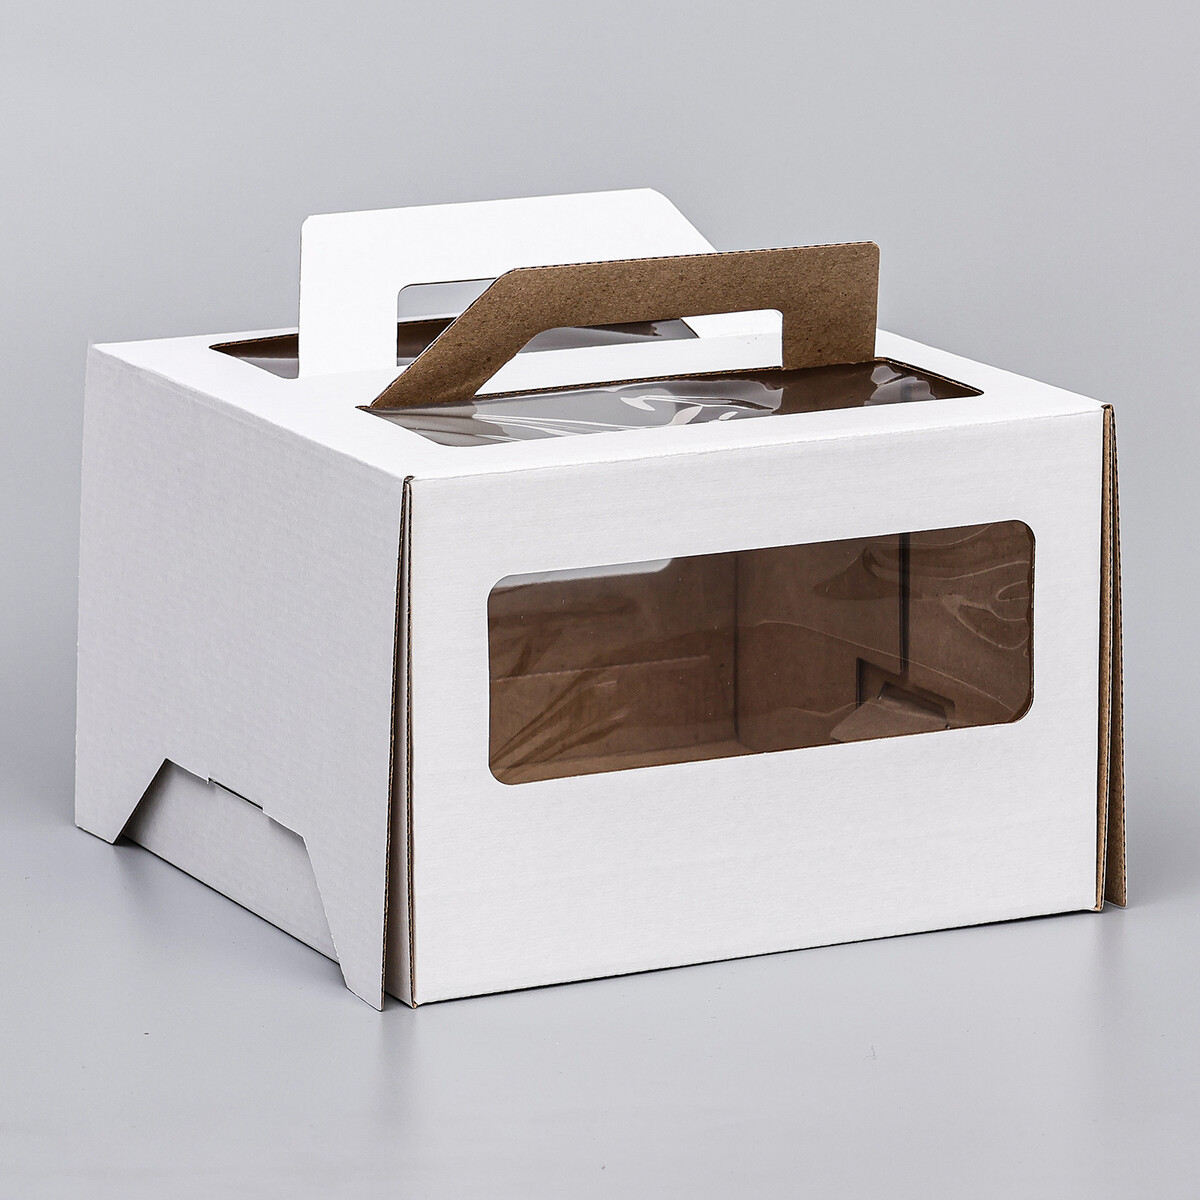 Коробка под торт 2 окна, с ручками, белая, 22 х 22 х 15 см коробка самосборная белая 13 х 13 х 3 см